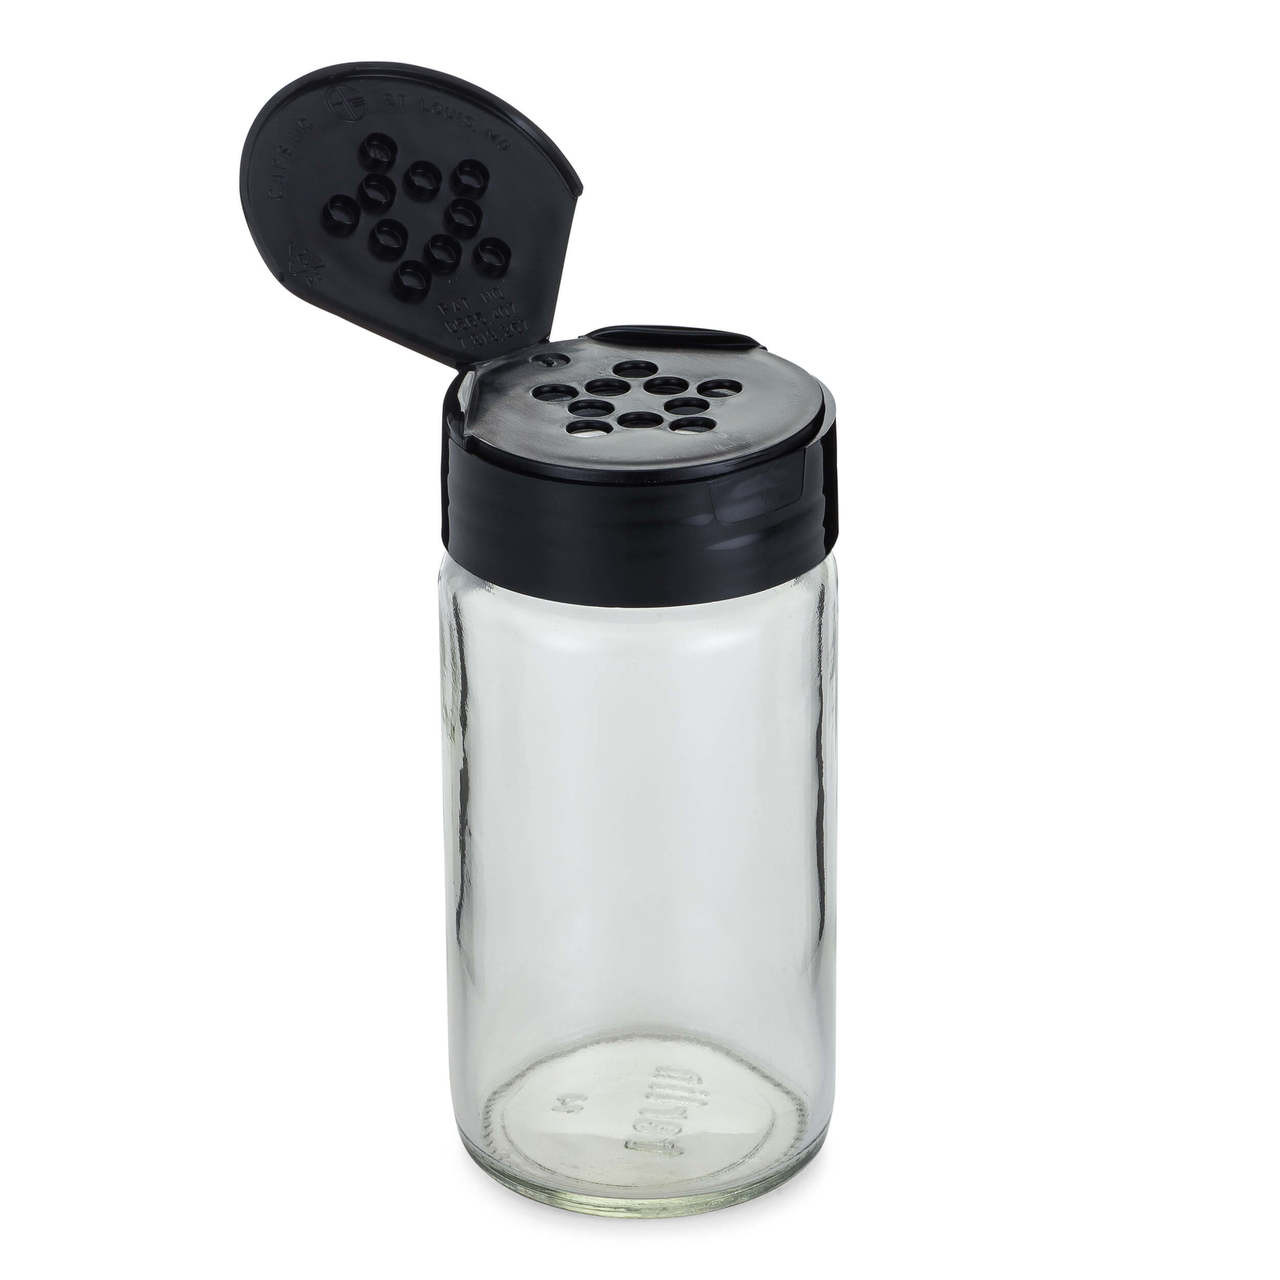 Plastic Spice Jars - 8 oz, Black Cap - Case of 48